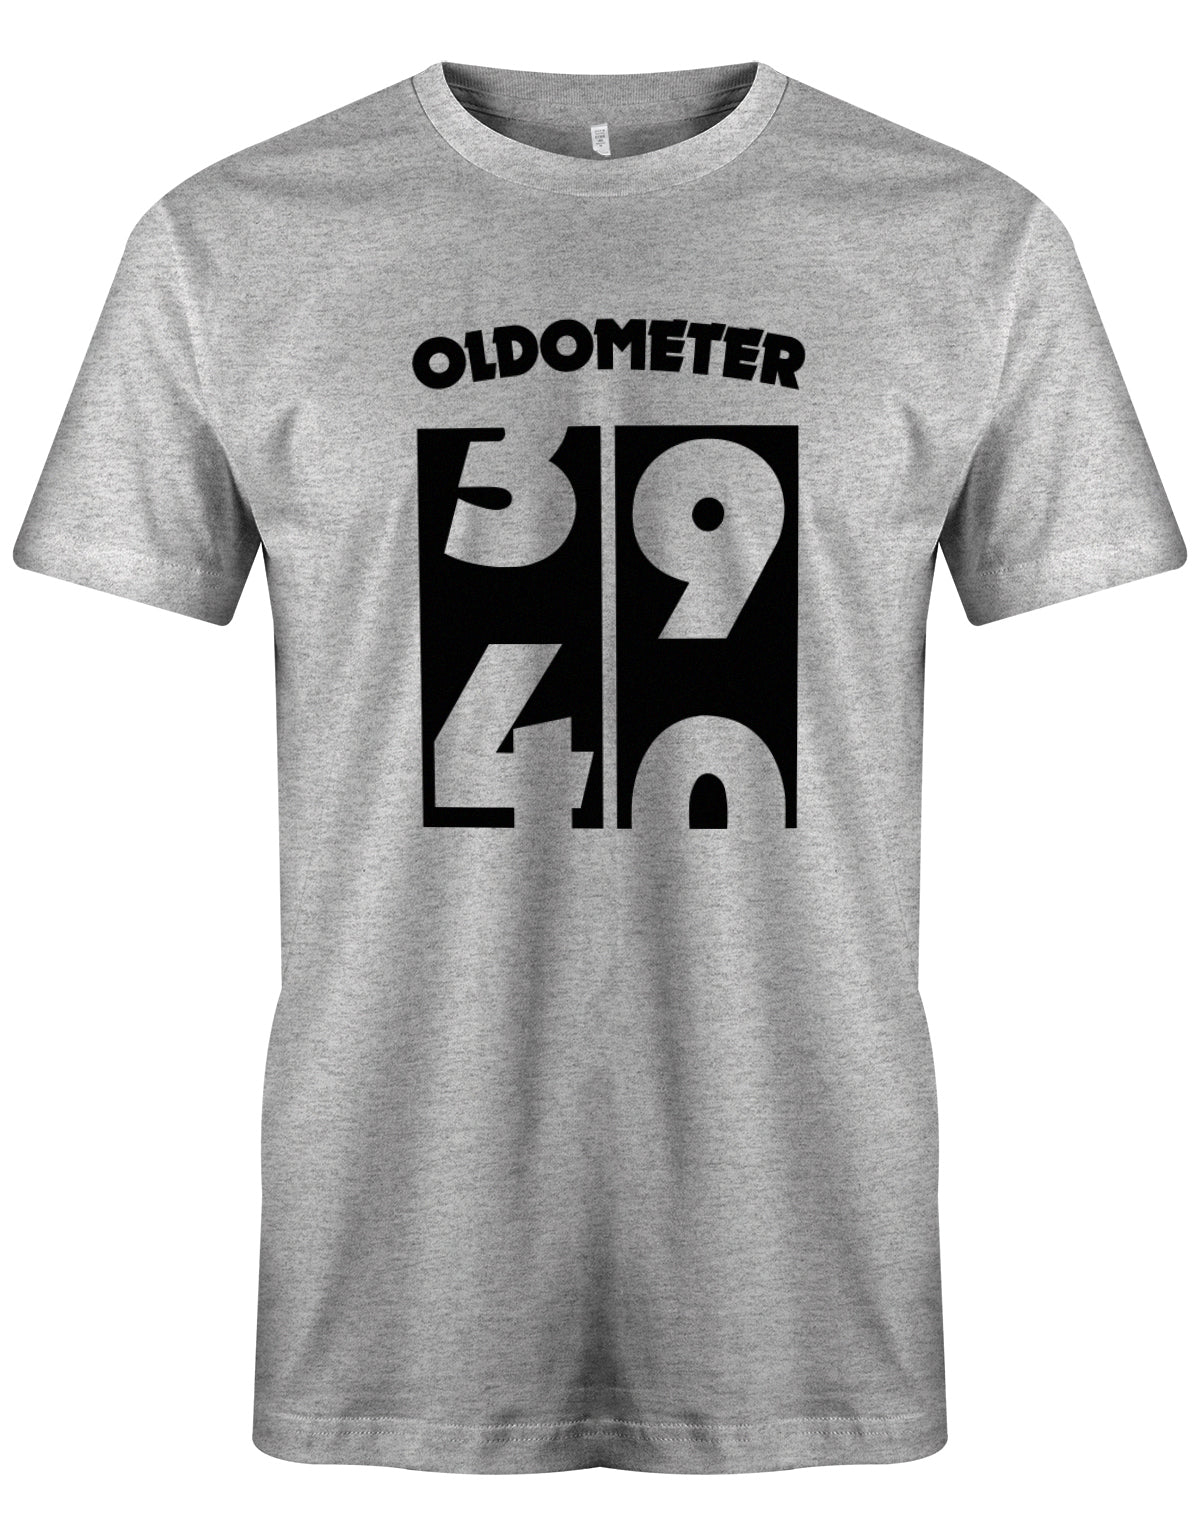 Oldometer von 39 zu 40 Jahre - T-Shirt 40 Geburtstag Männer - Jahrgang 1983 TShirt myShirtStore Grau